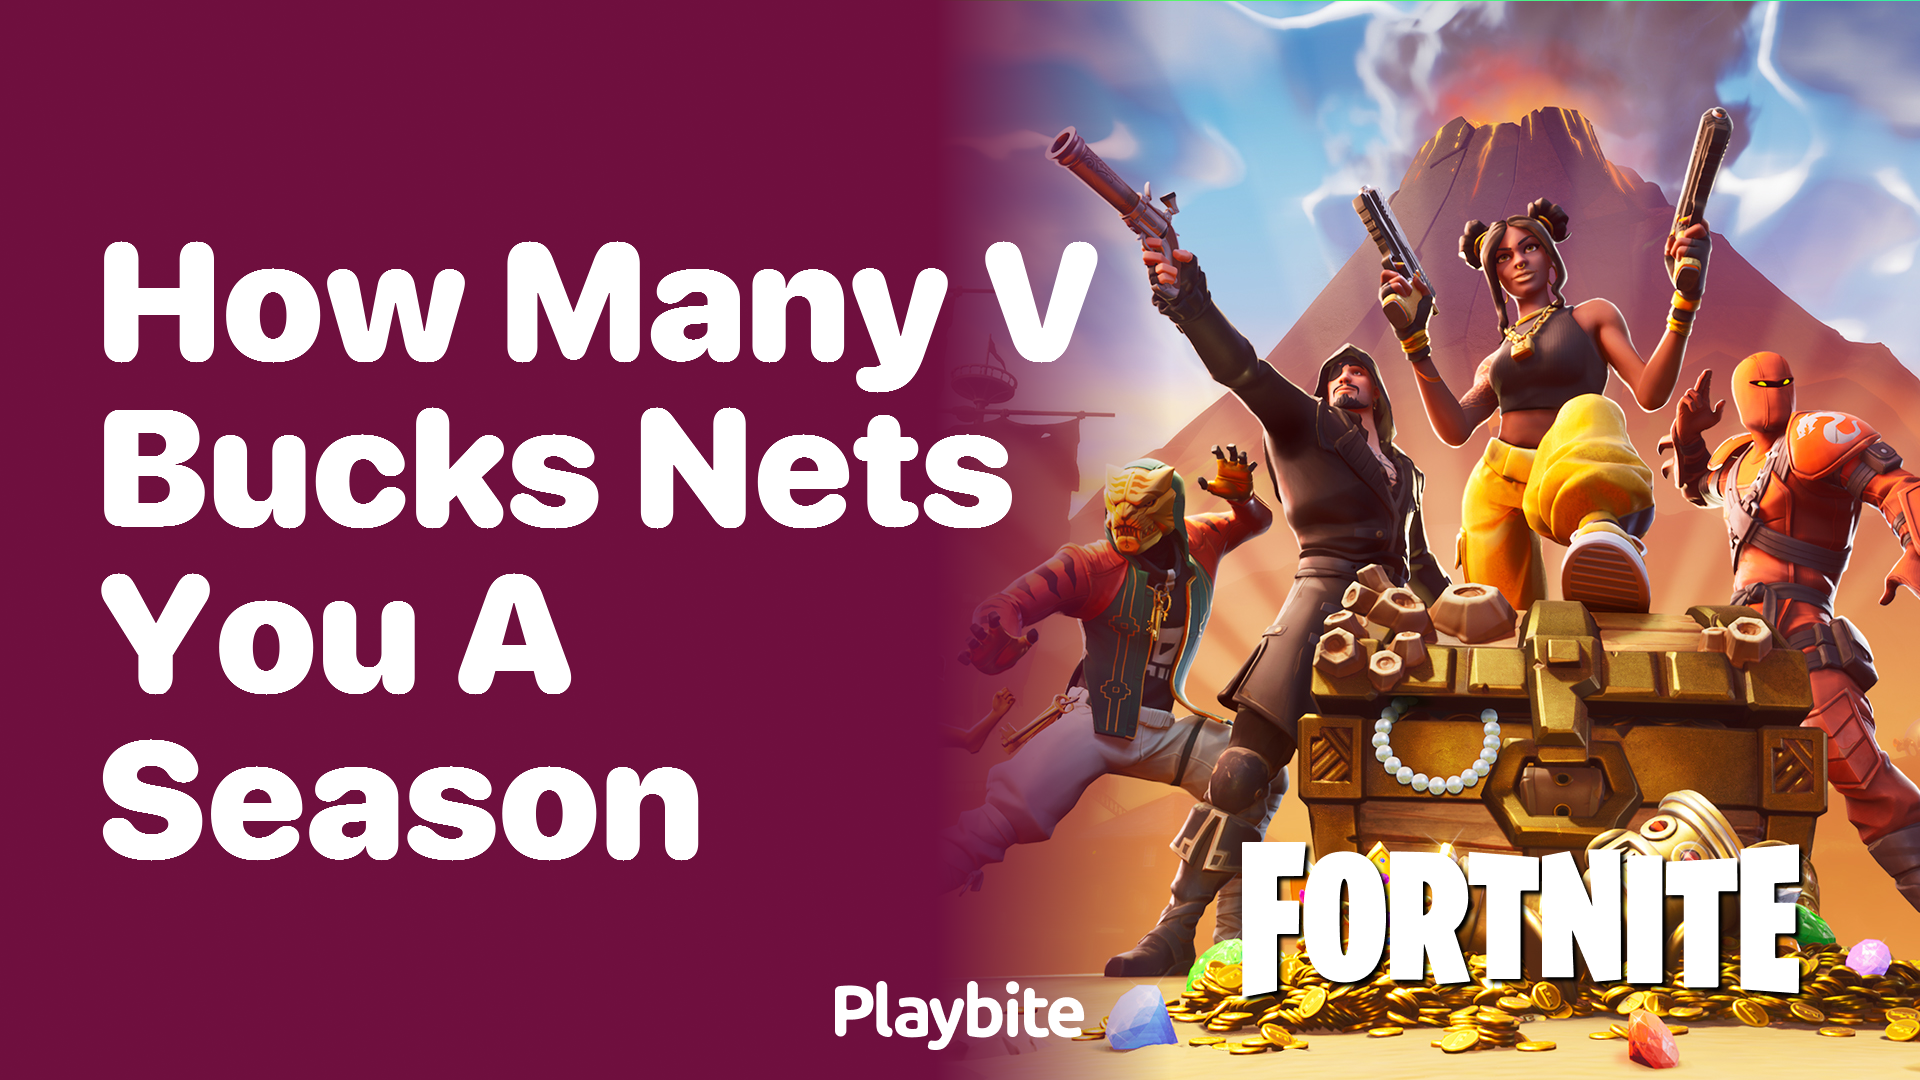 How Many V-Bucks Nets You a Season in Fortnite?